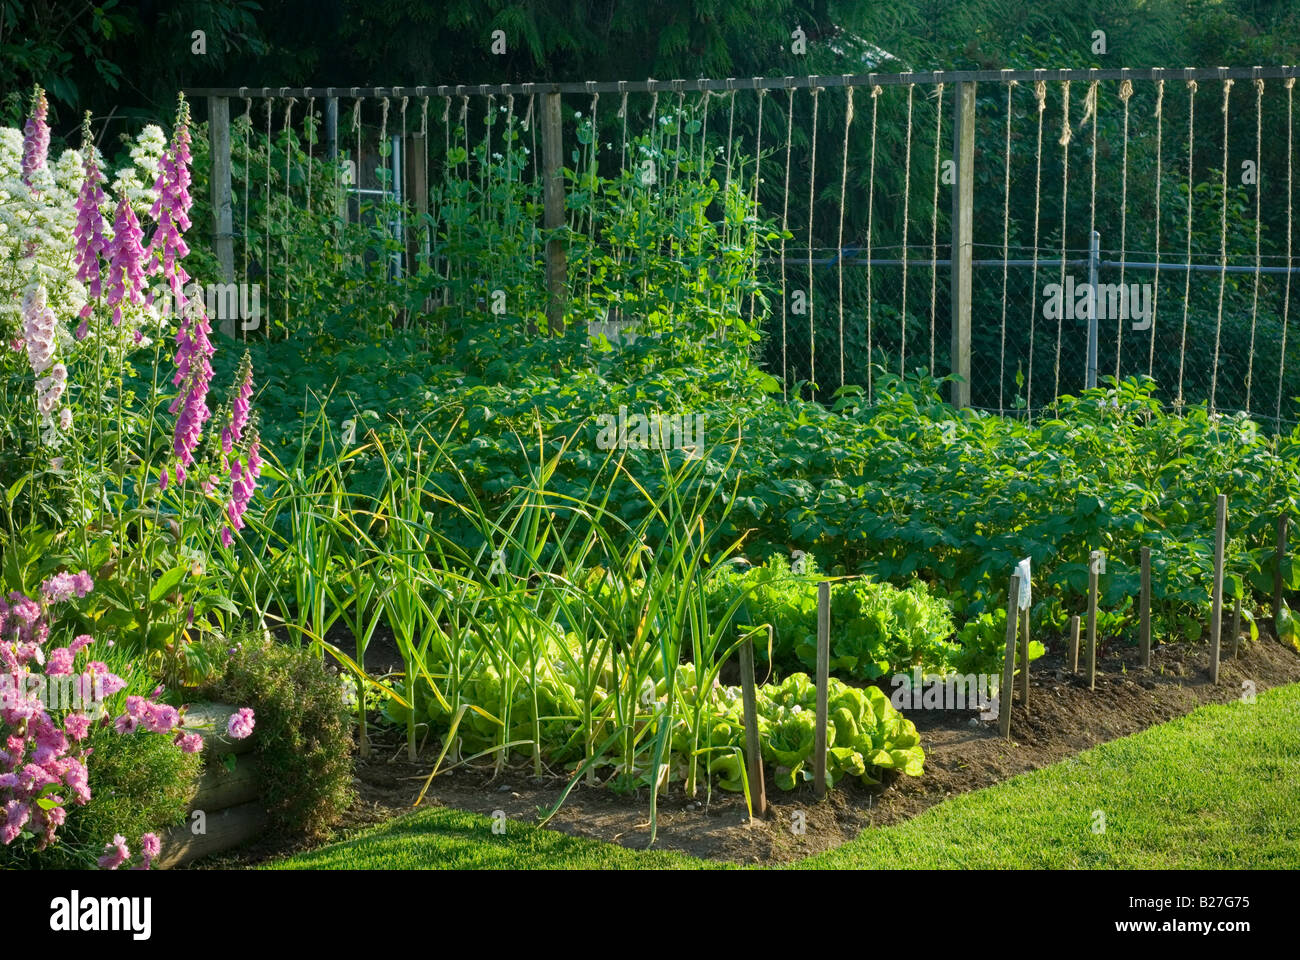 A small suburban backyard vegetable garden. Stock Photo